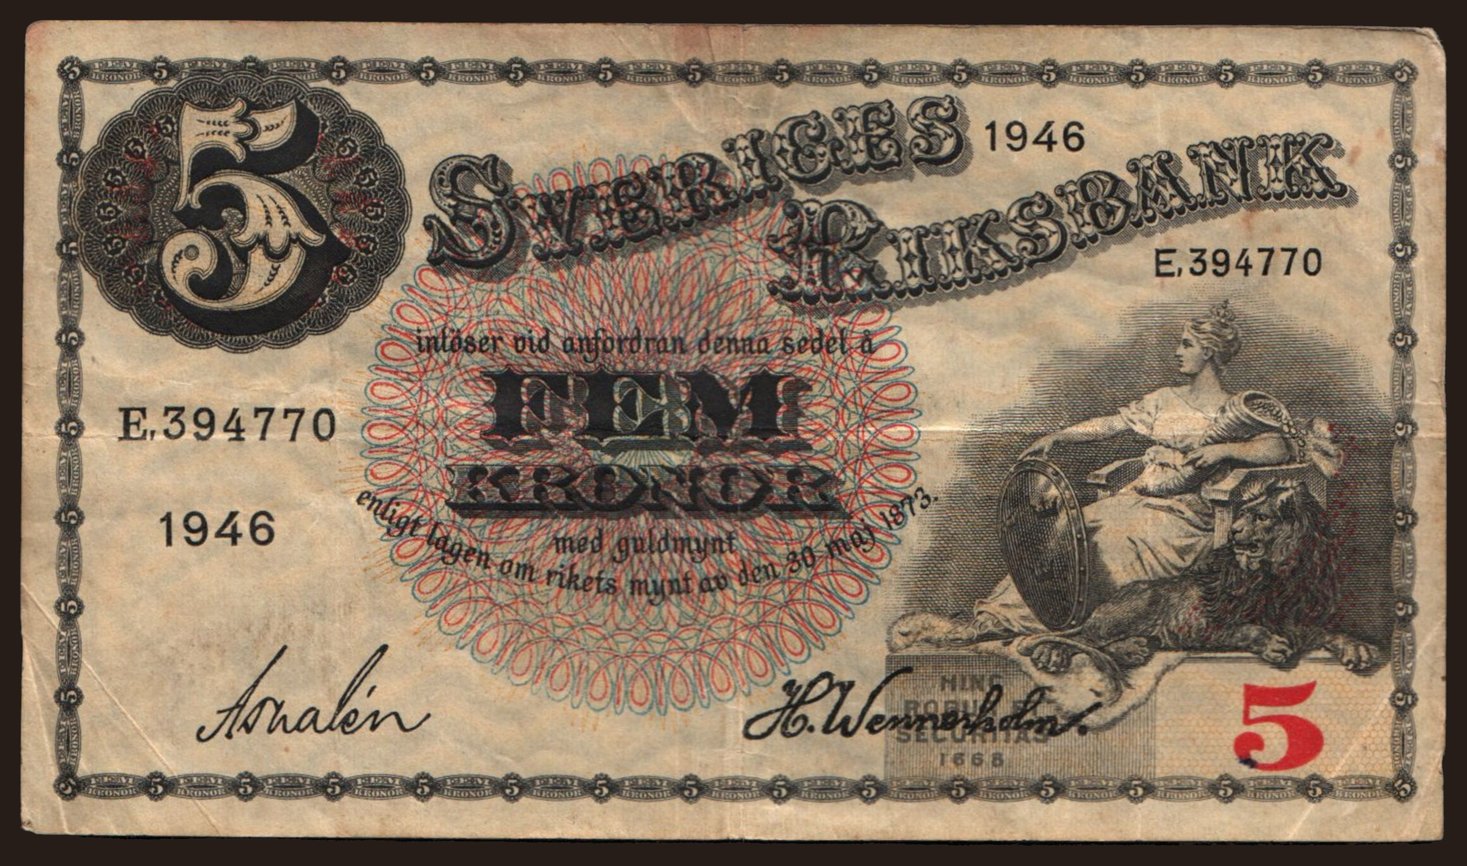 5 Kronor, 1946 | notafilia-kp.com